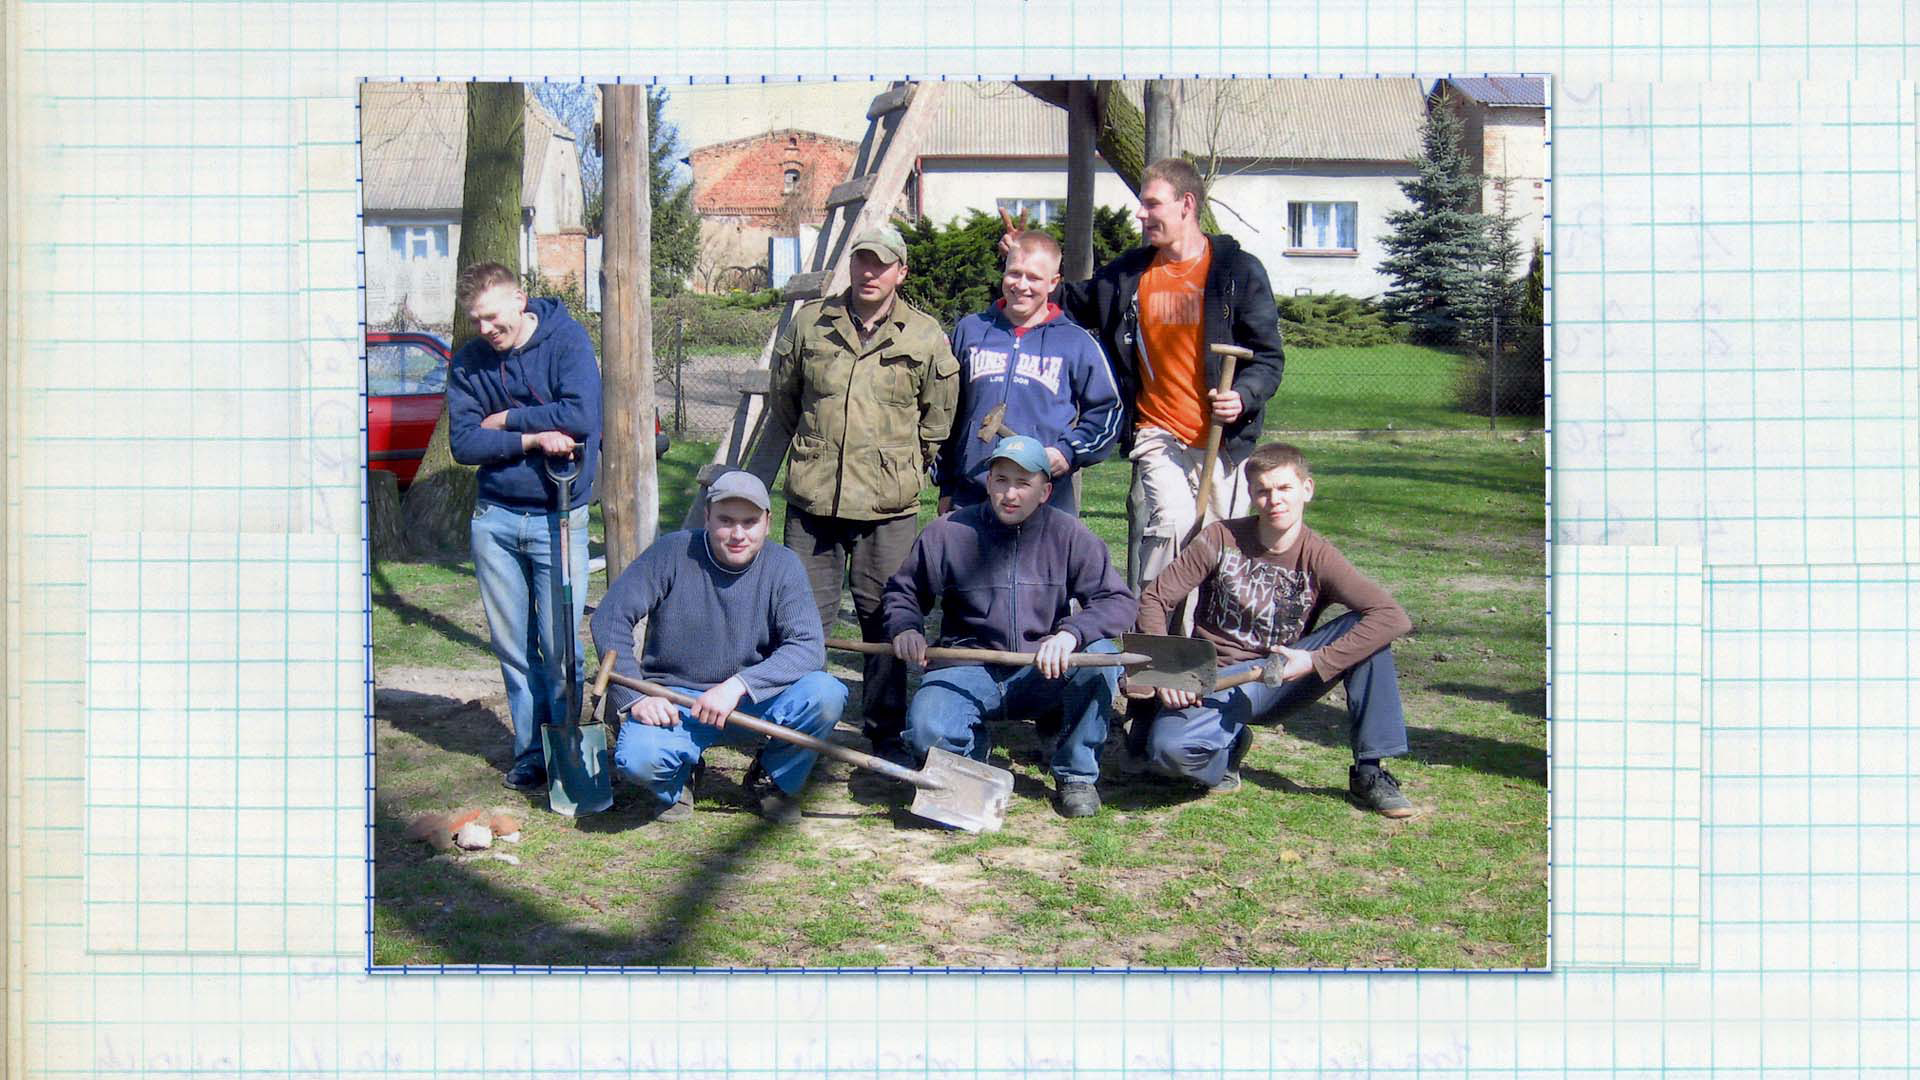 Członkowie Stowarzyszenia Klubu Kawalerskiego obok gotowej trybuny, 2009 Fotografia kolorowa. Siedmiu mężczyzn w różnym wieku pozuje do zdjęcia przy drewnianej konstrukcji. Większość z nich w swoich dłoniach trzyma łopatę, towarzyszymy im radosny nastrój.